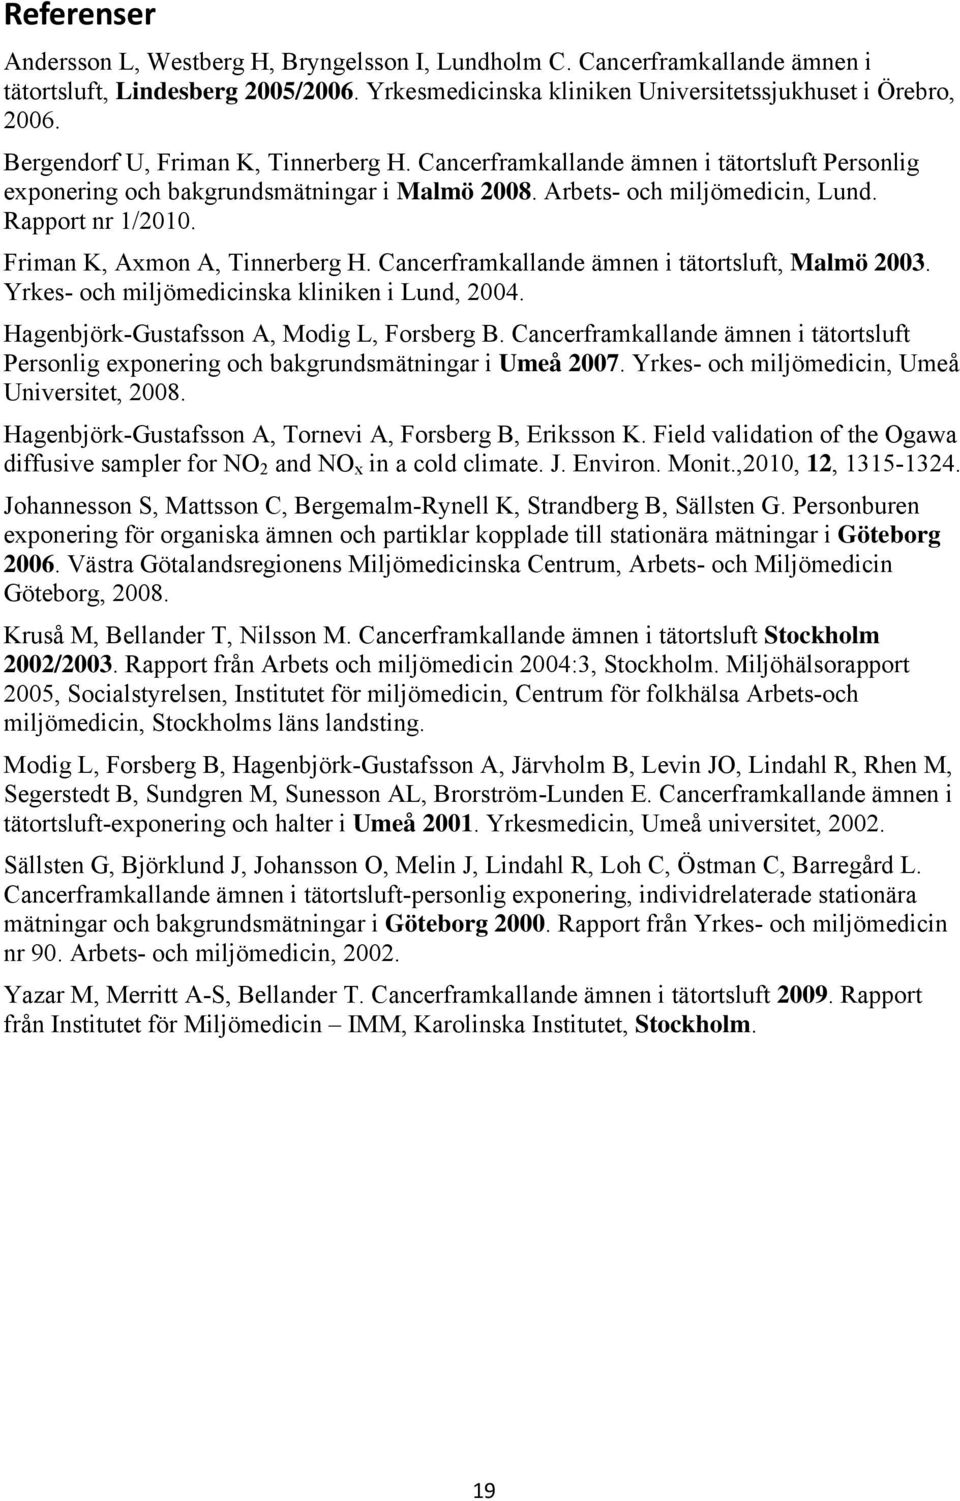 Friman K, Axmon A, Tinnerberg H. Cancerframkallande ämnen i tätortsluft, Malmö 2003. Yrkes- och miljömedicinska kliniken i Lund, 2004. Hagenbjörk-Gustafsson A, Modig L, Forsberg B.